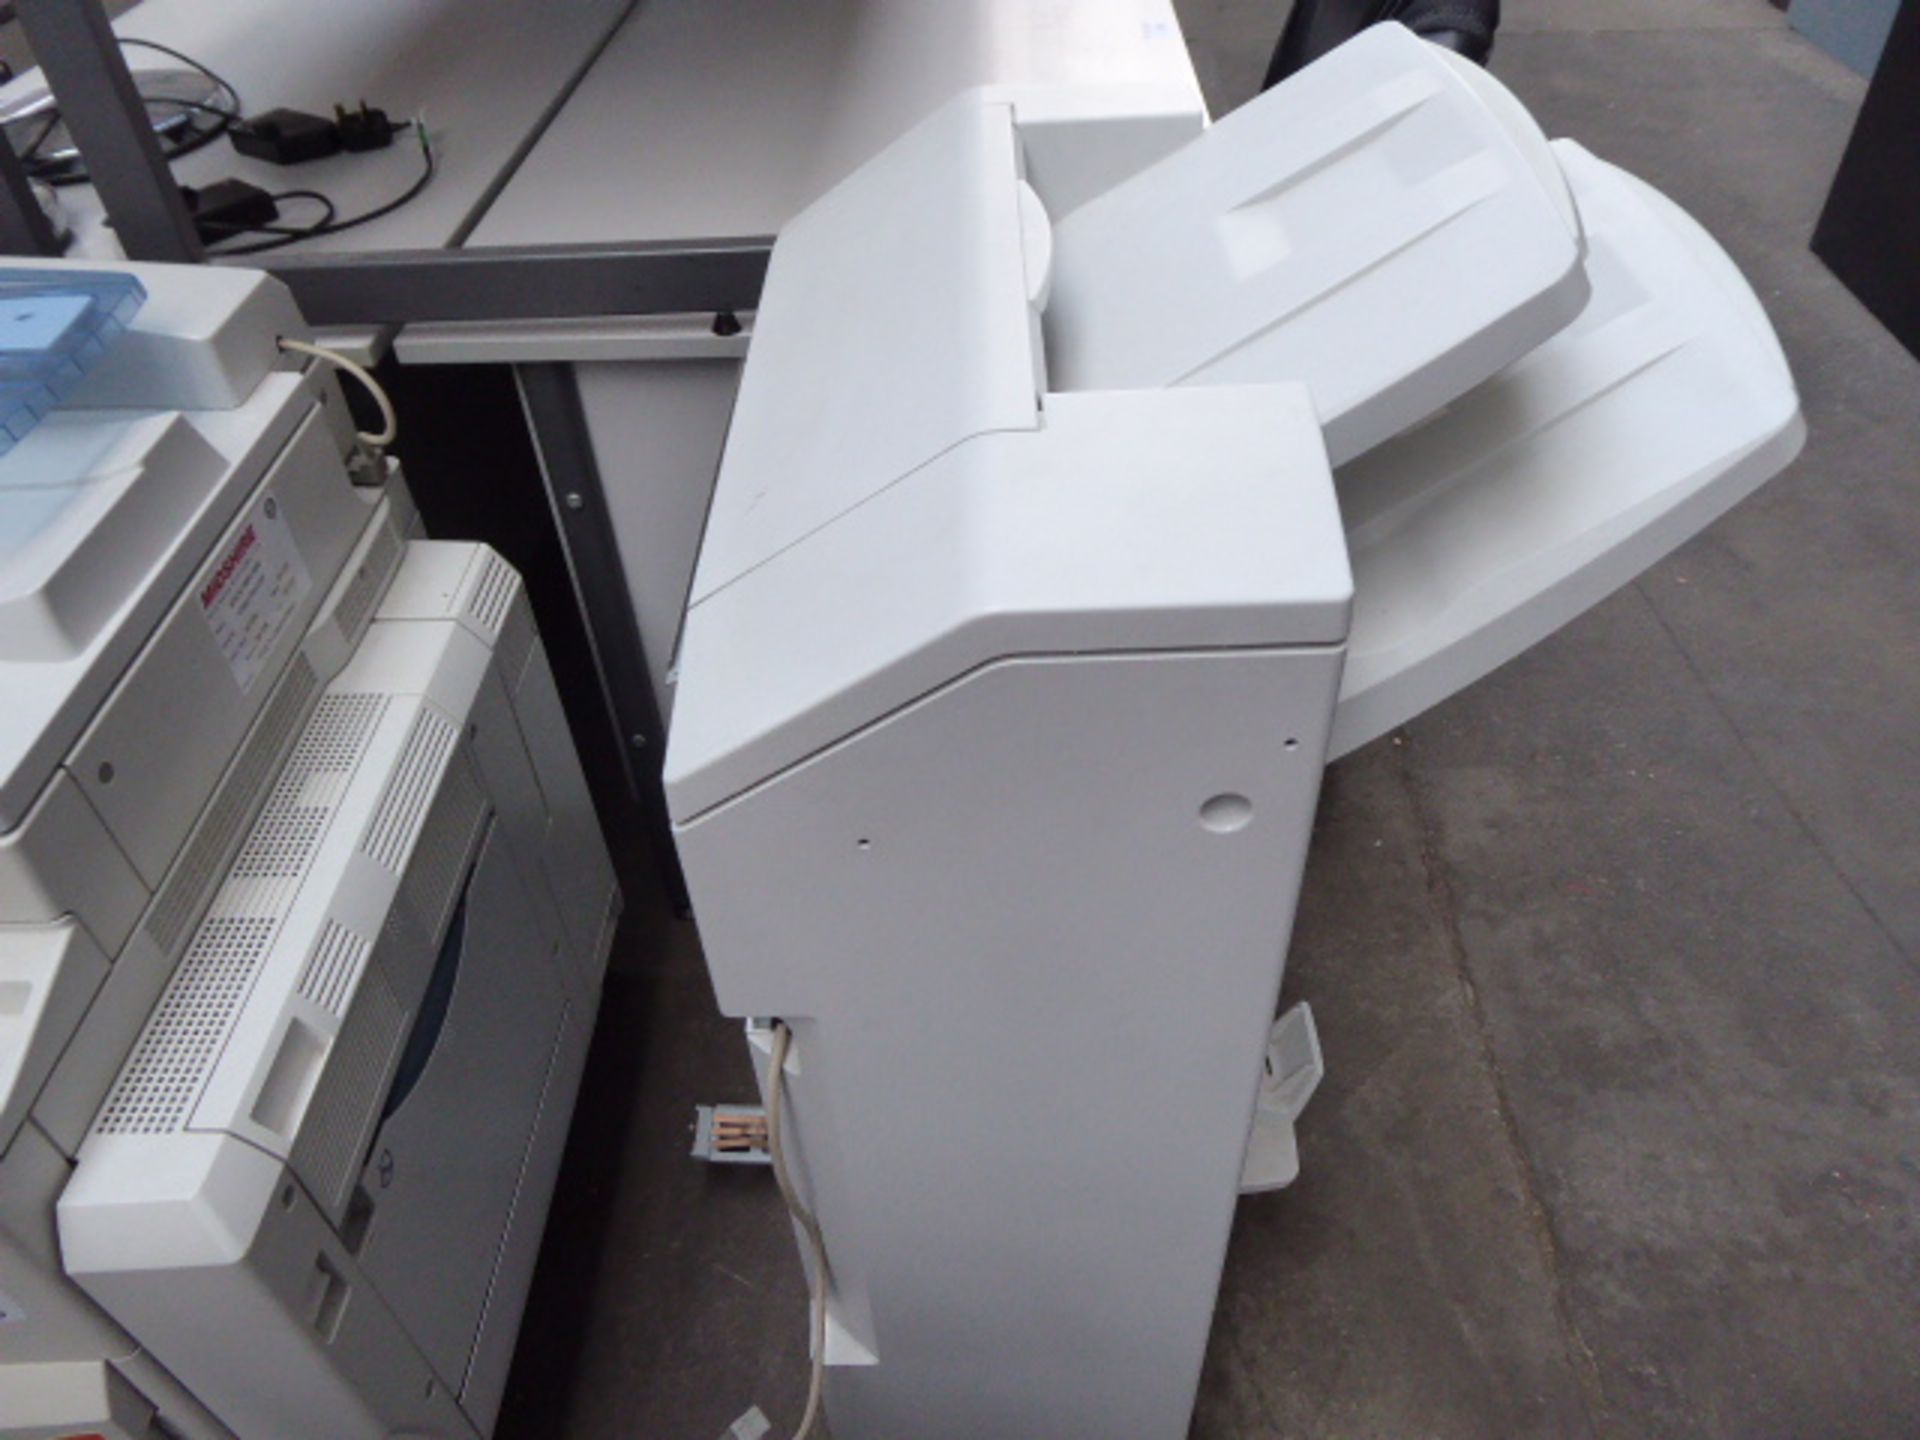 A Ricoh copier - Image 3 of 4